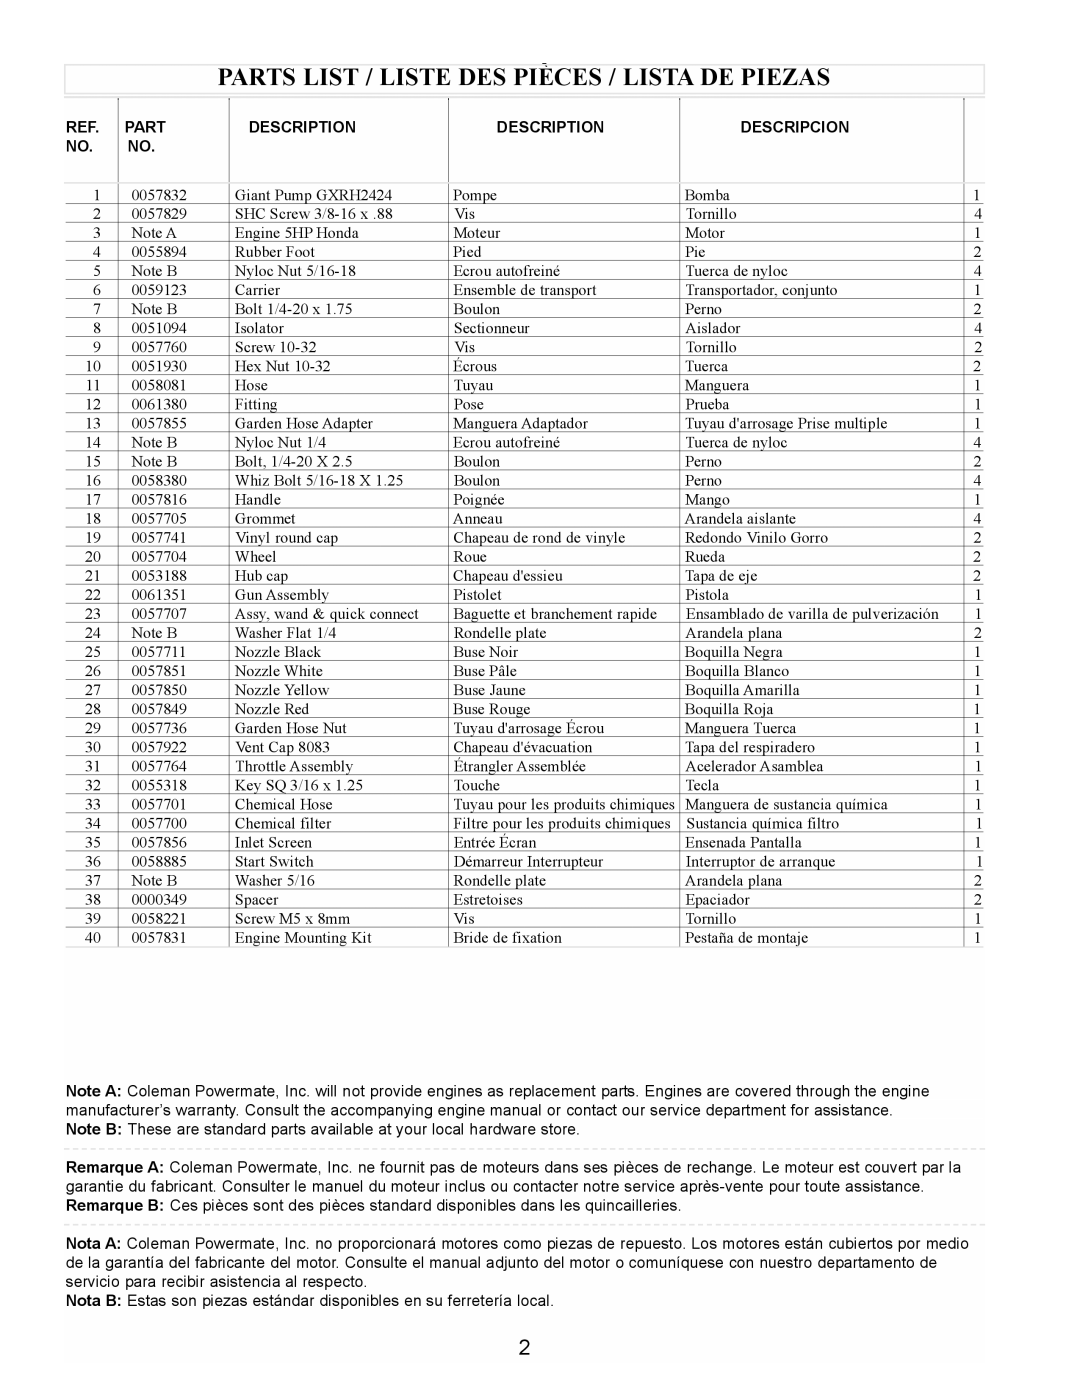 Coleman PW0912400.02 manual Parts List / Liste Des Pièces / Lista De Piezas, Ref No, Description, Descripcion 